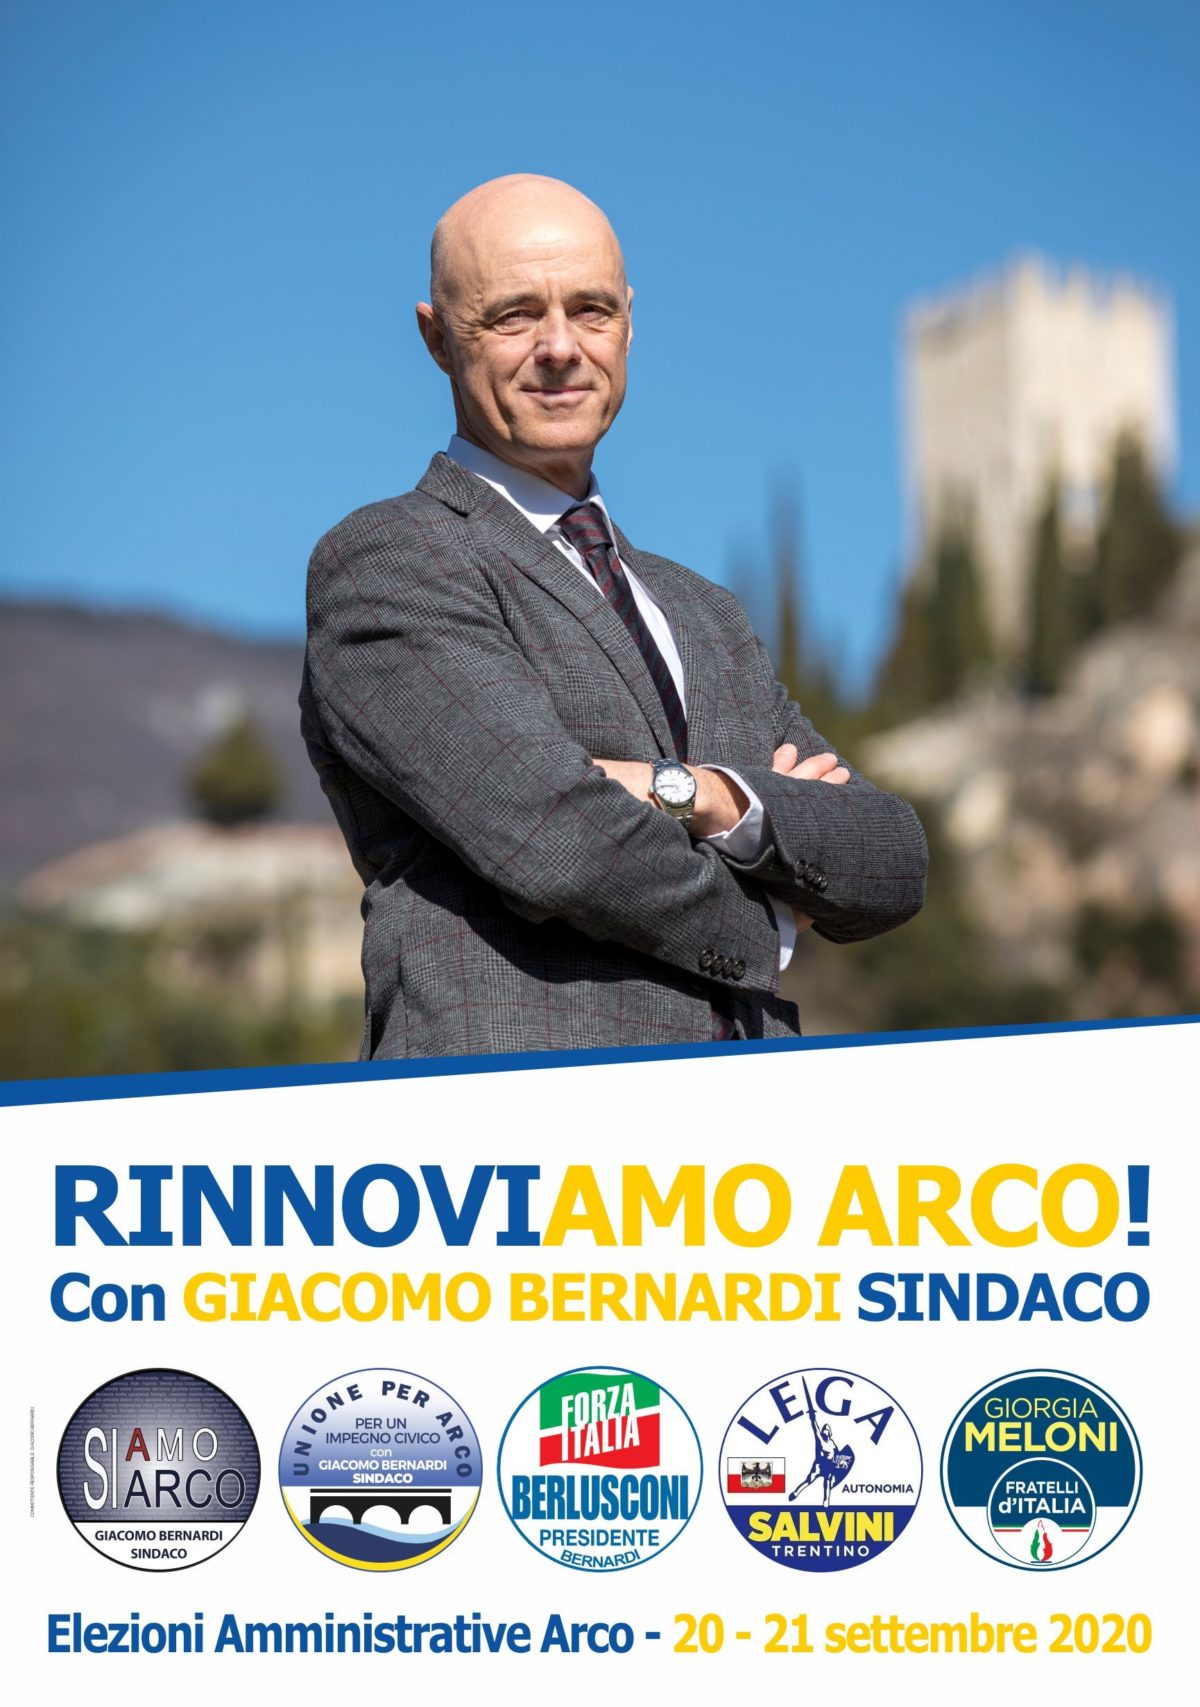 Giacomo Bernardi - sindaco di Arco - Elezioni 20-21 settembre 2020